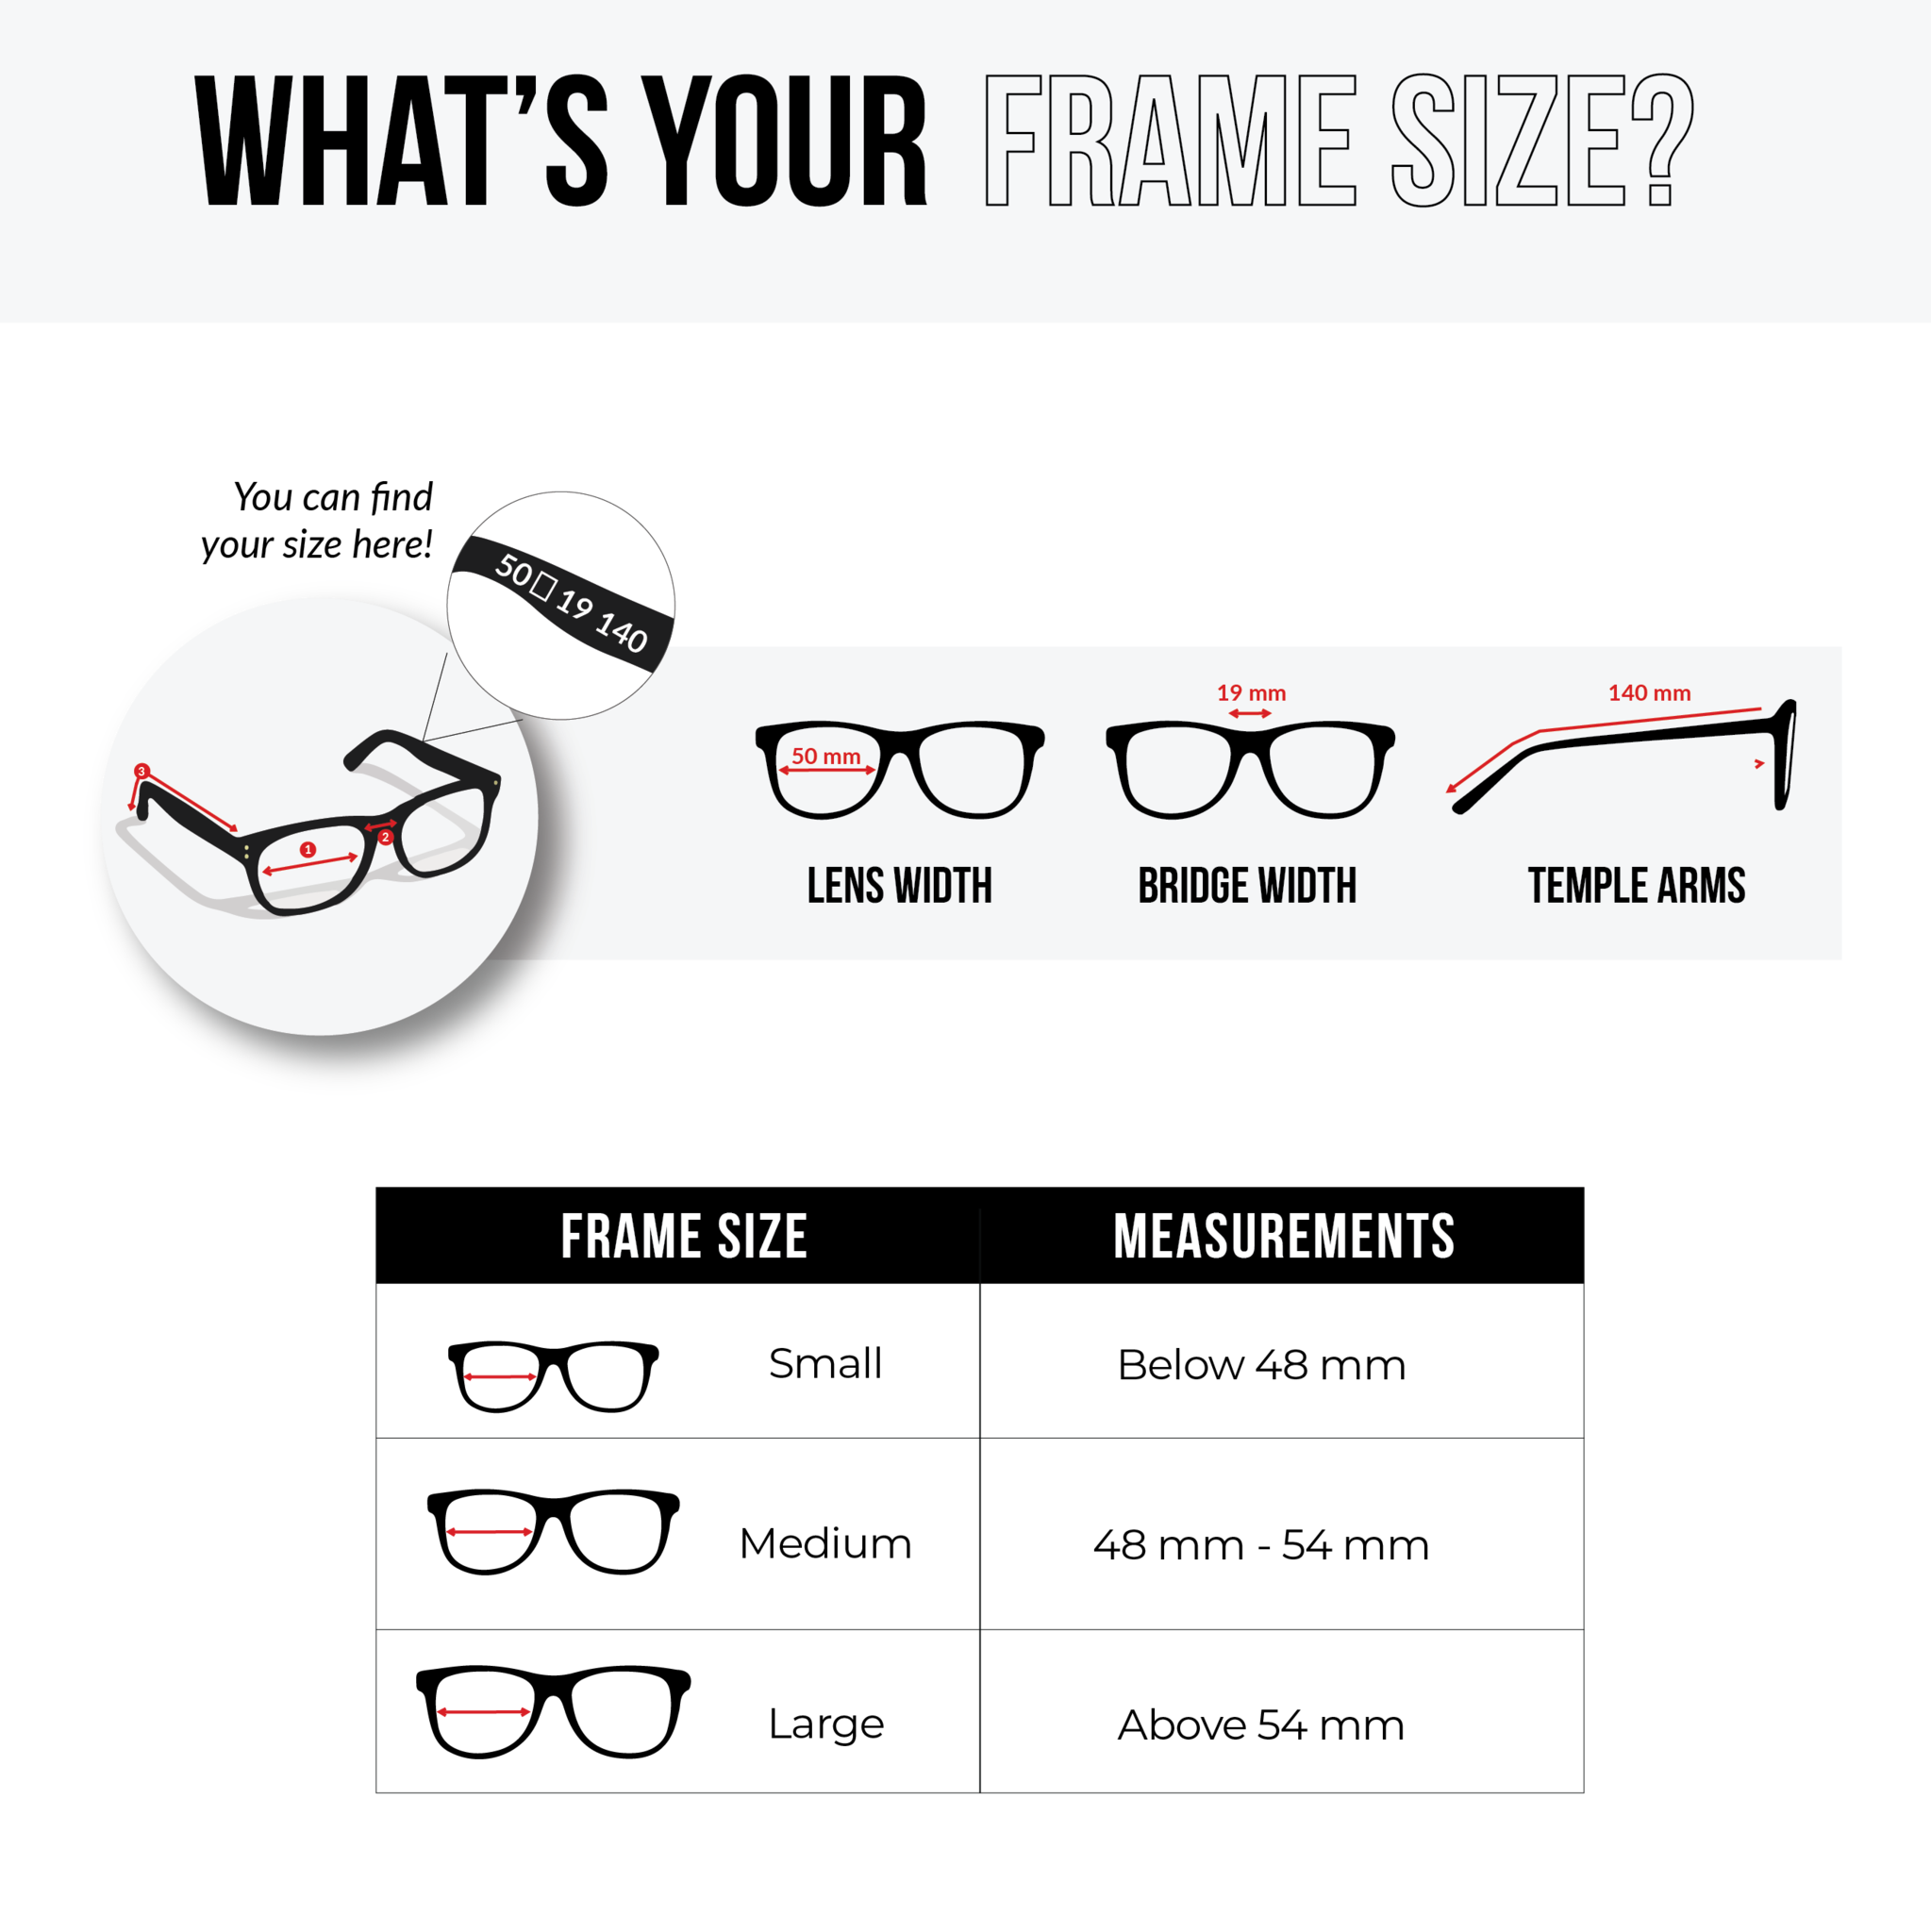 NS Luxury - 5511 - Black - Eyeglasses